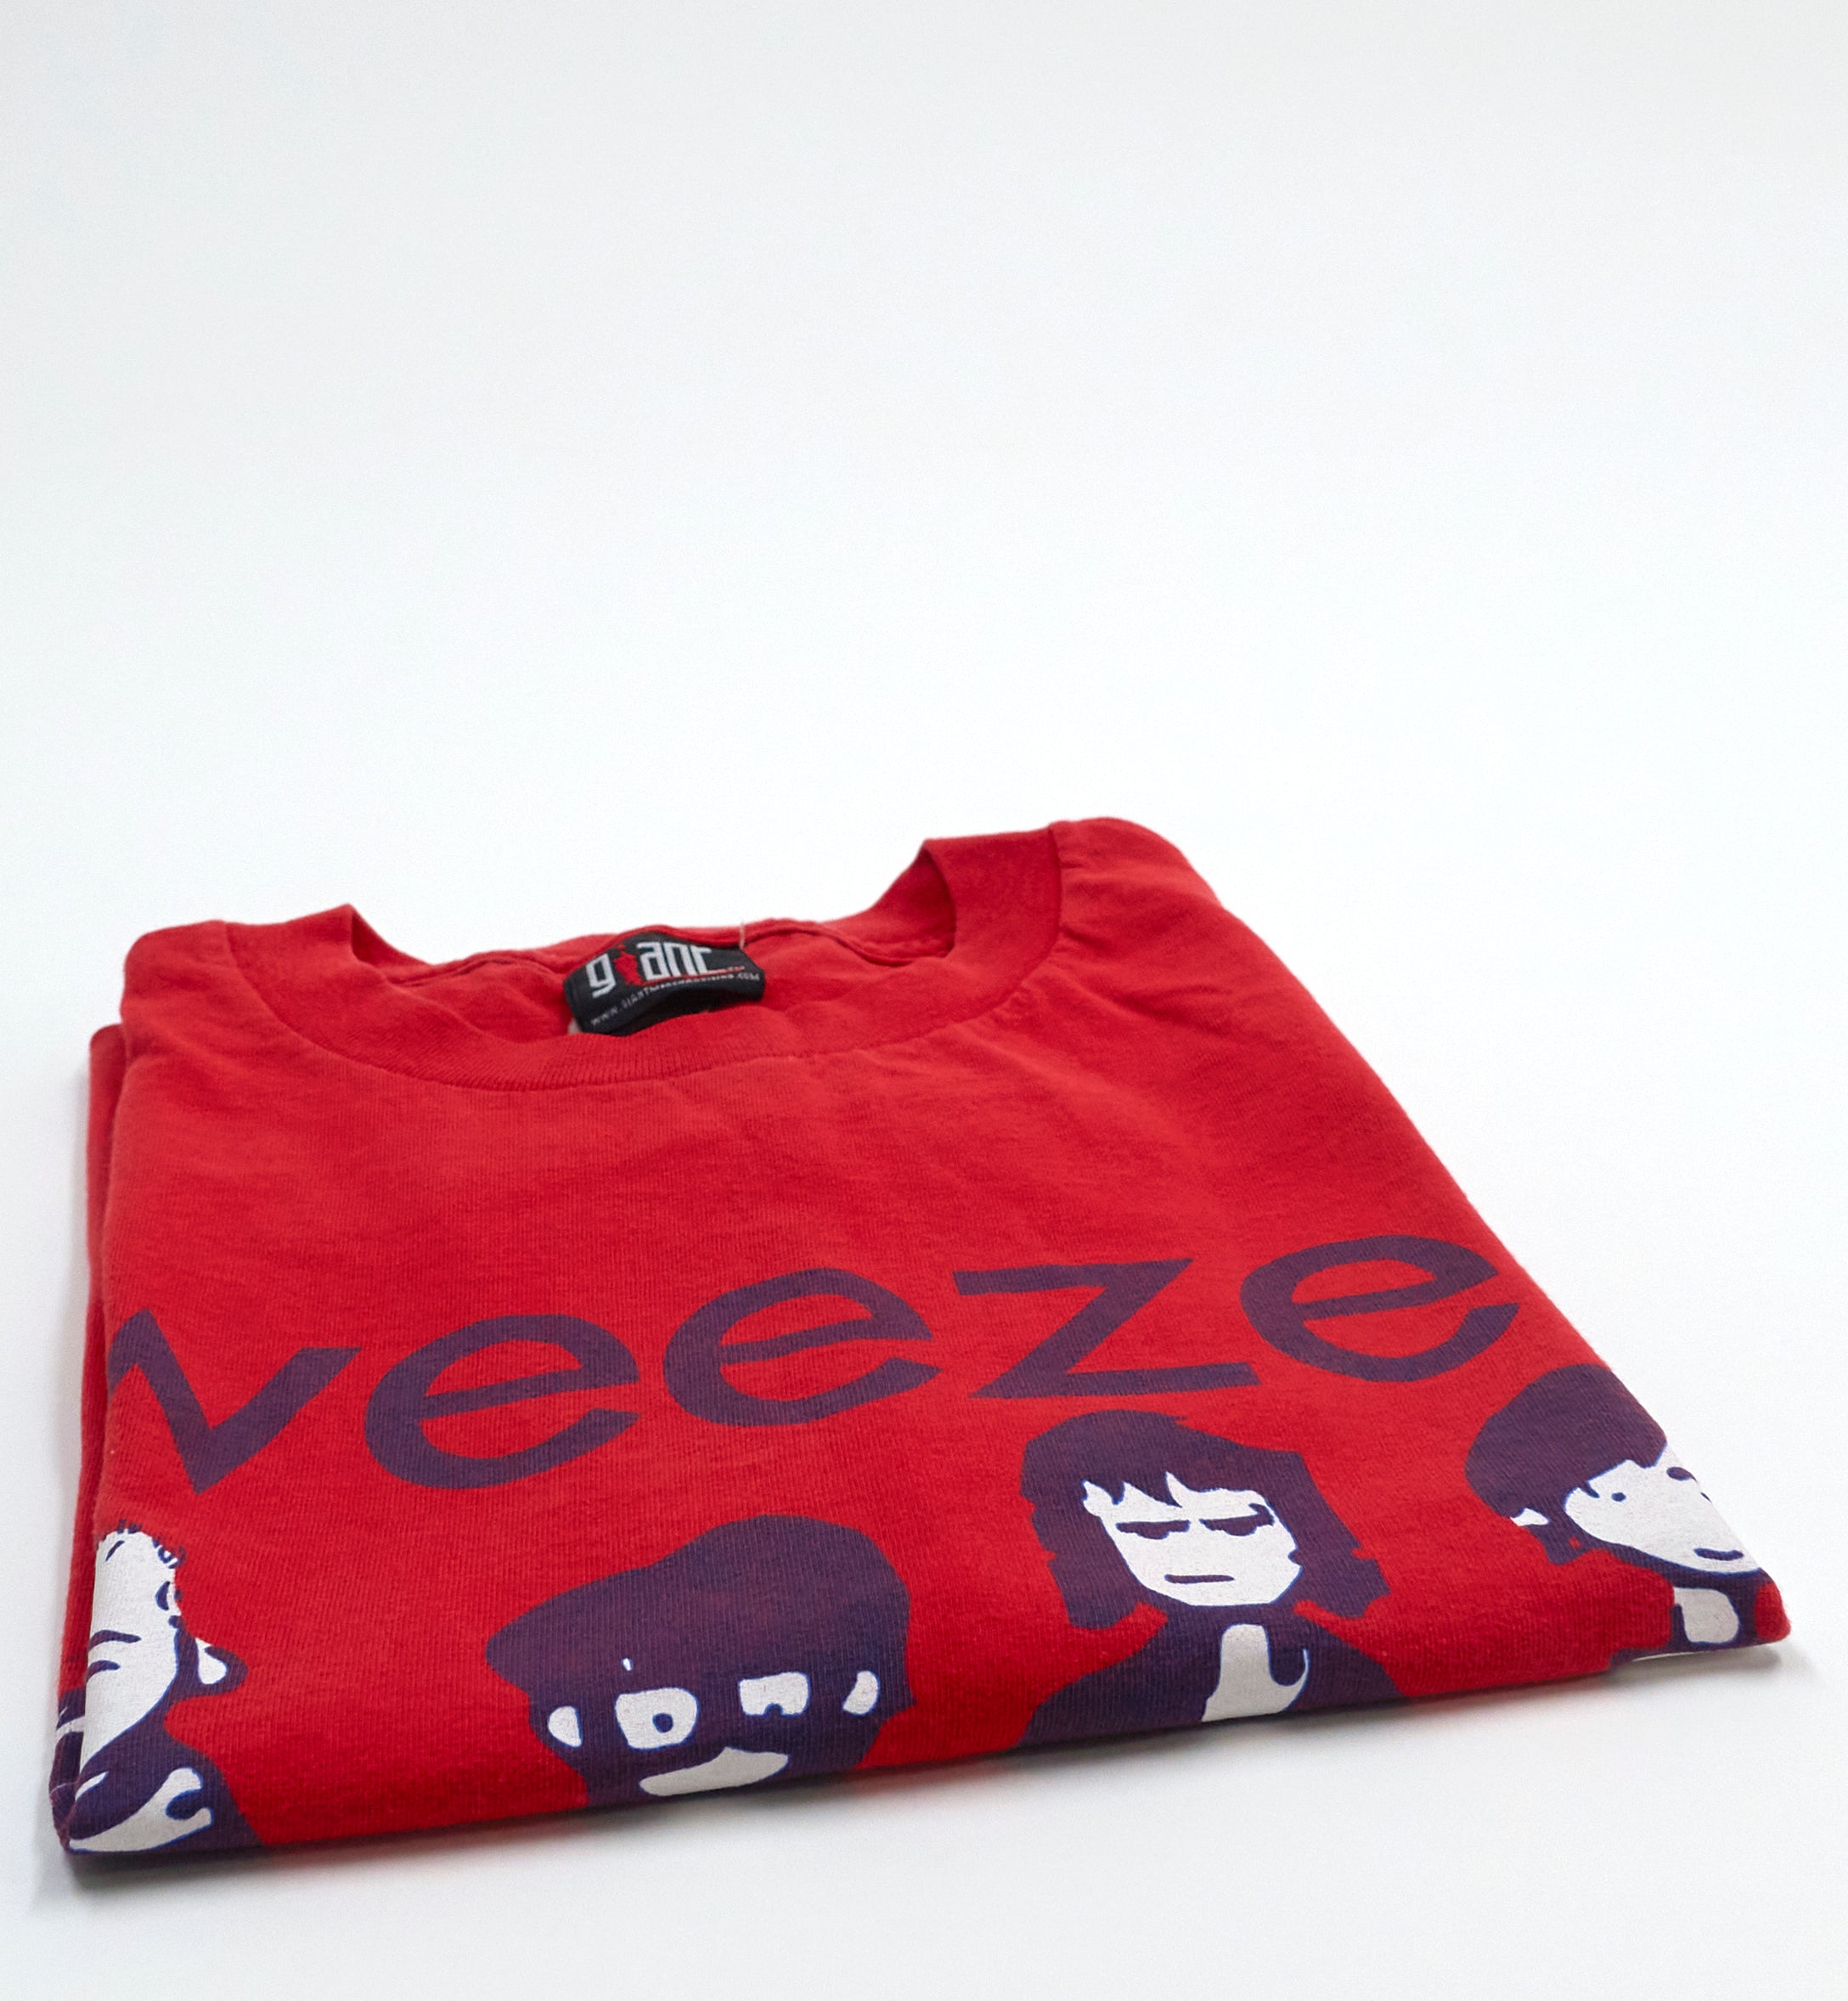 Weezer - Cartoon Band 2000 (Green Album) Tour Shirt Size Large